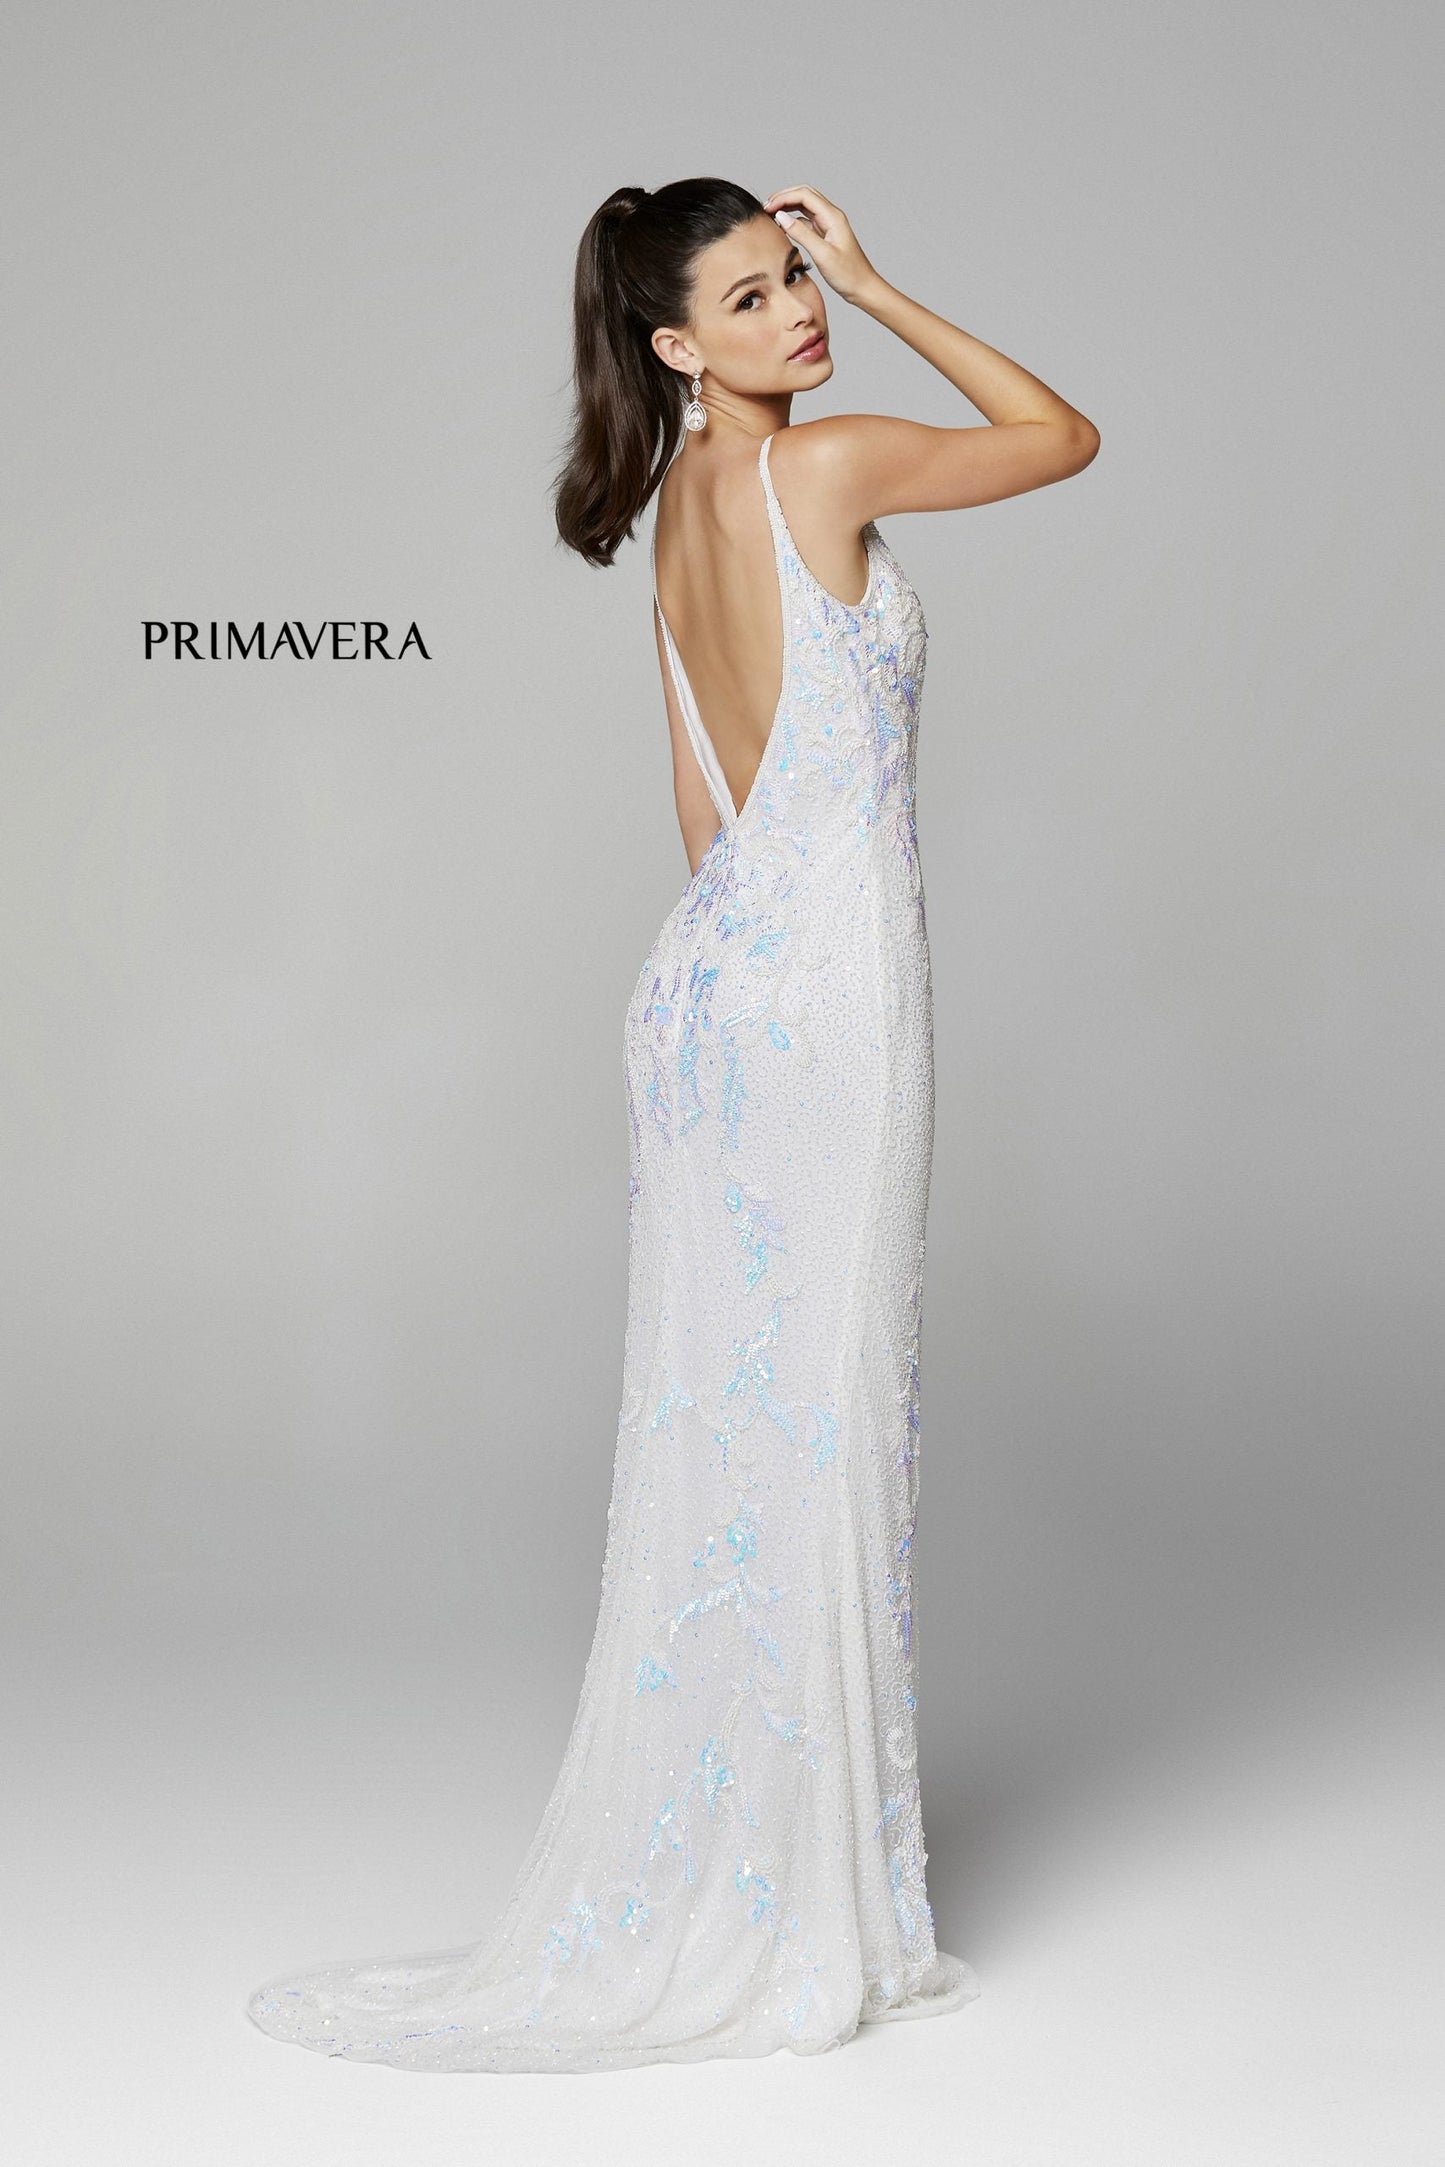 Primavera Couture 3727 Size 22 Prom Dress Beaded Floral Details V Neckline Backless Slit